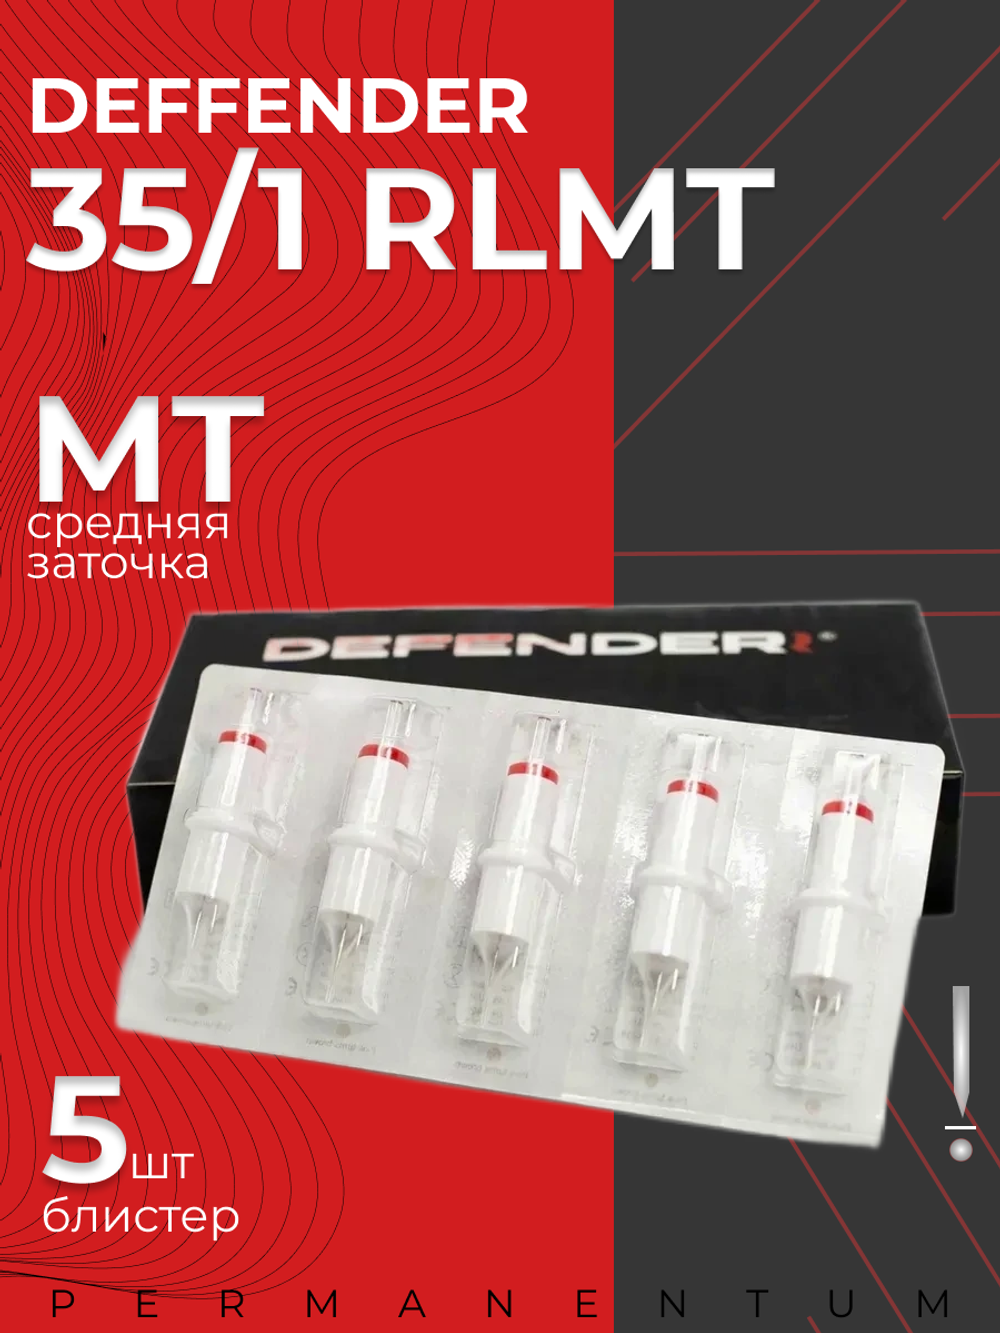 Картриджи для татуажа Defender 35/1 RLMT блистер 5 шт.